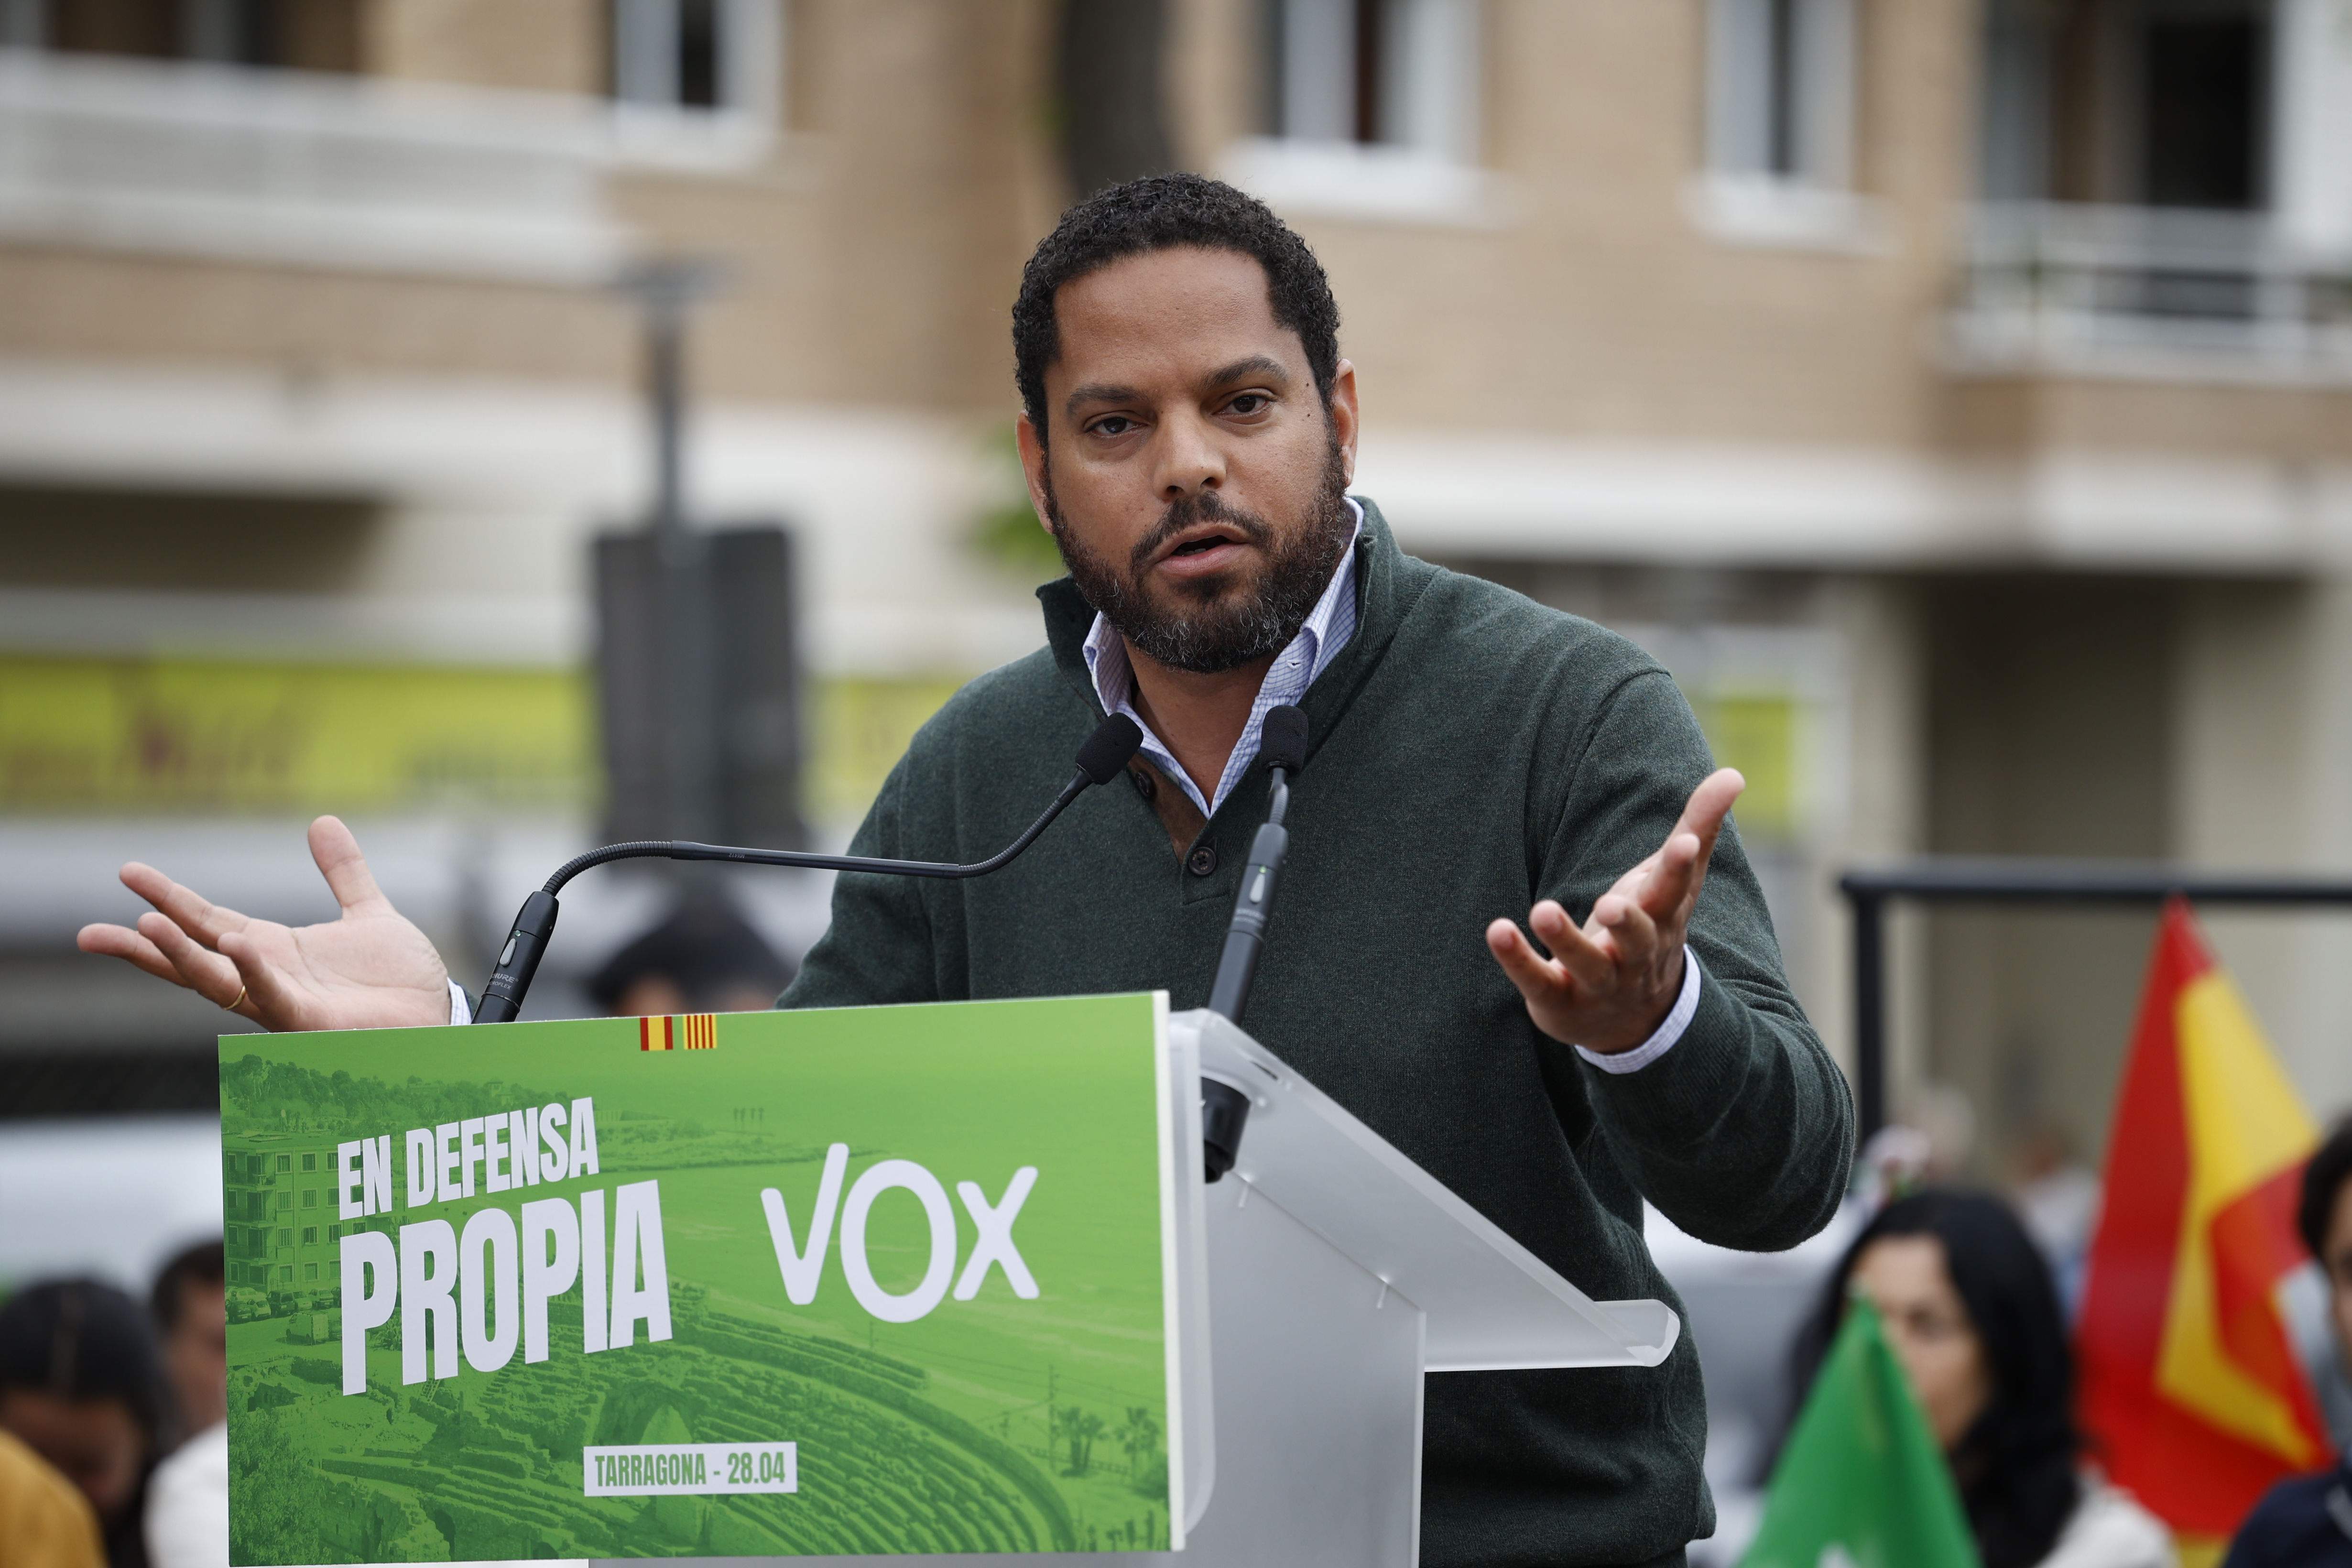 La Junta Electoral insiste en la obligatoriedad de incluir a Vox en los debates electorales